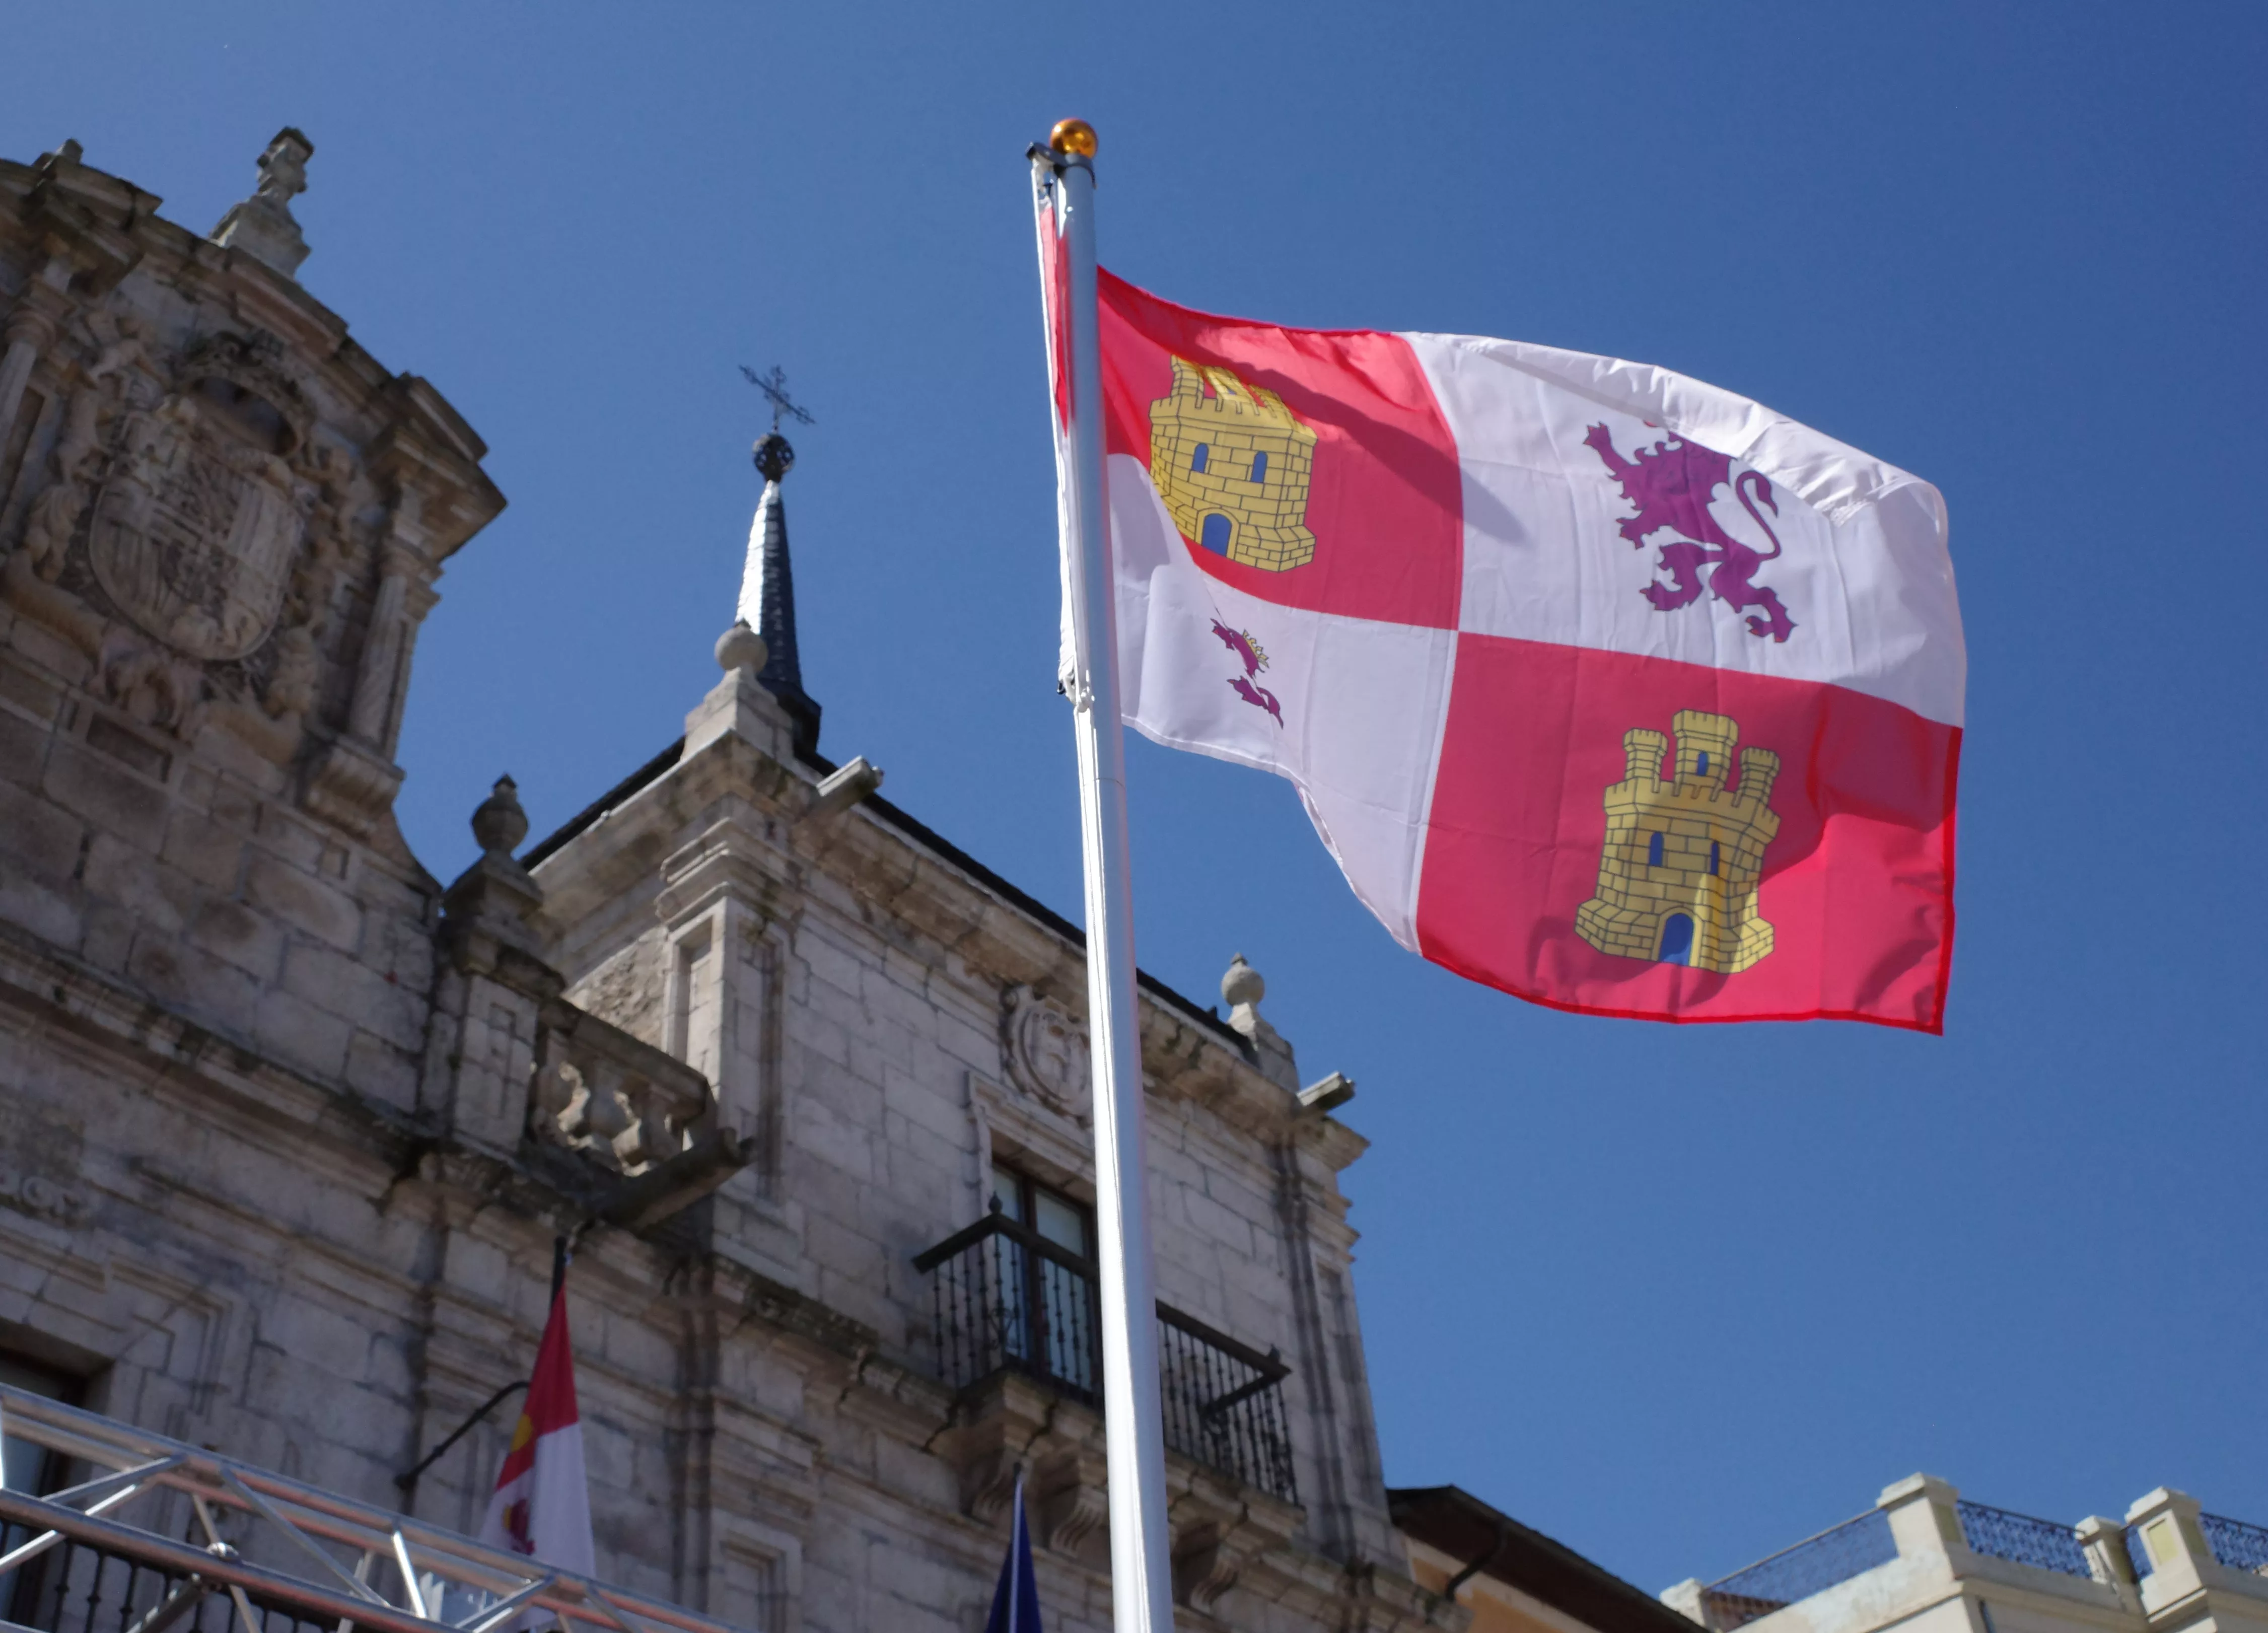 Día de Castilla y León en Ponferrada